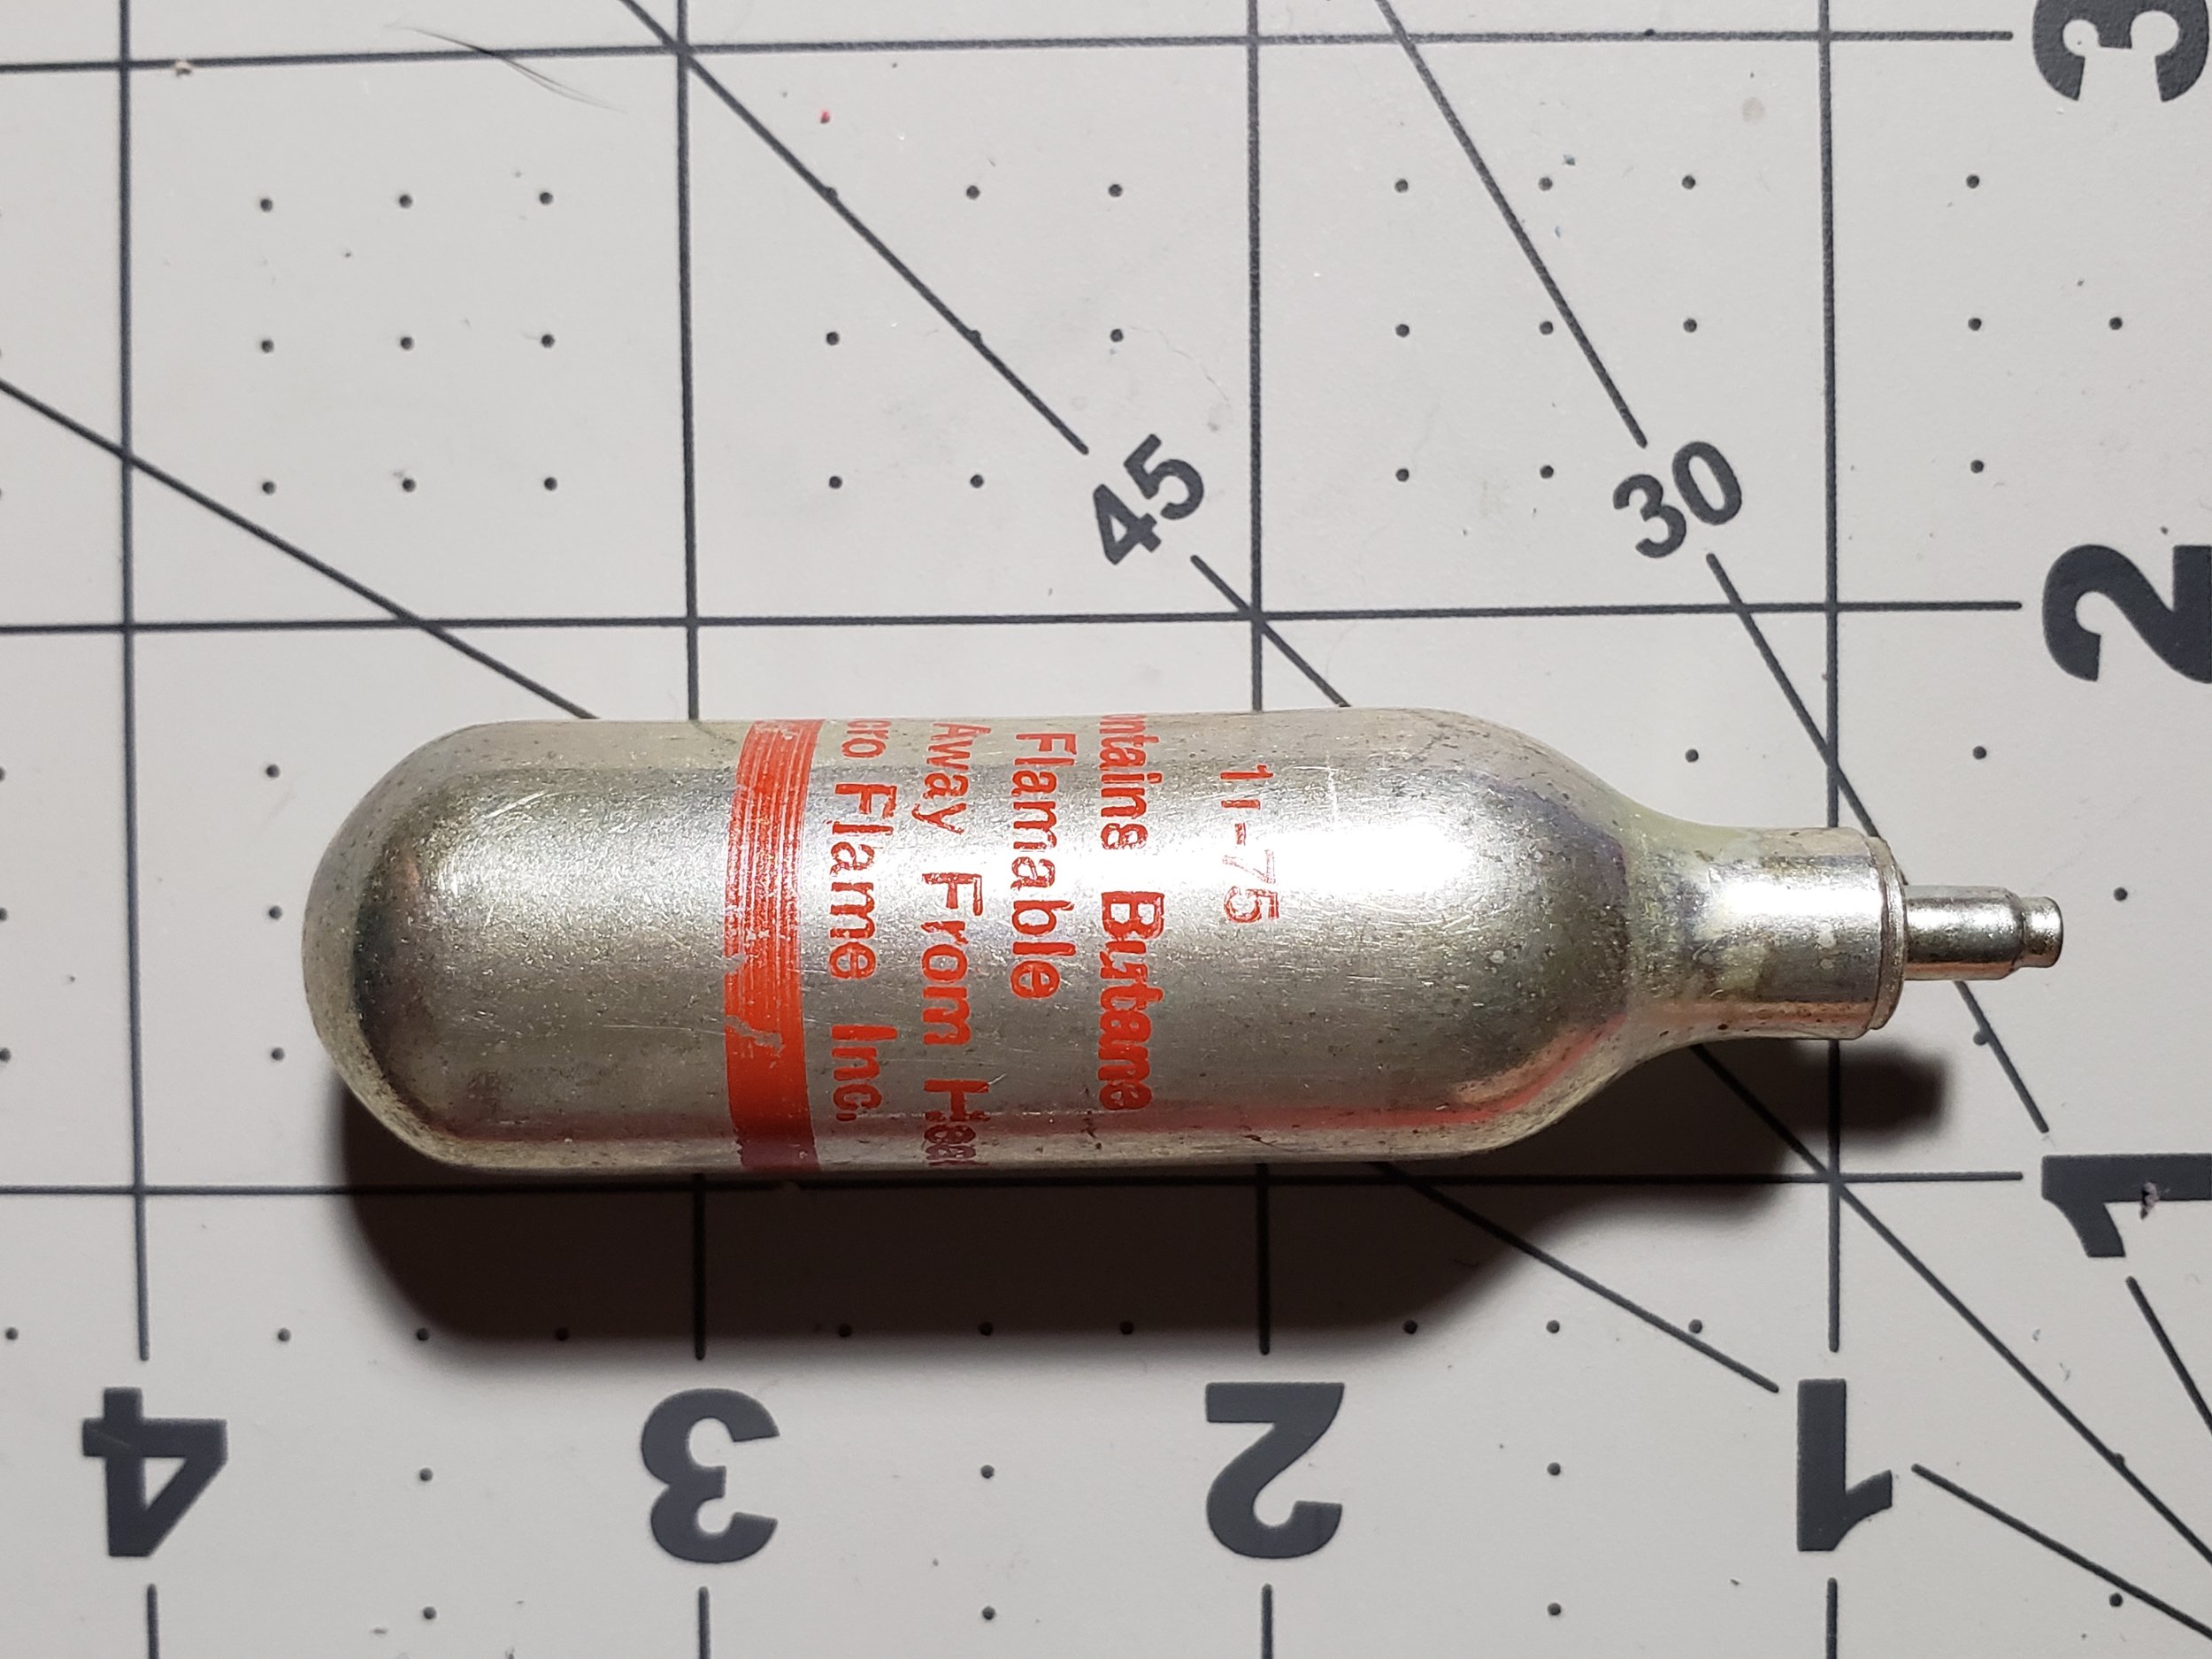  Star Wars Jawa Welding Torch 1977 Compressed Butane Cylinder 